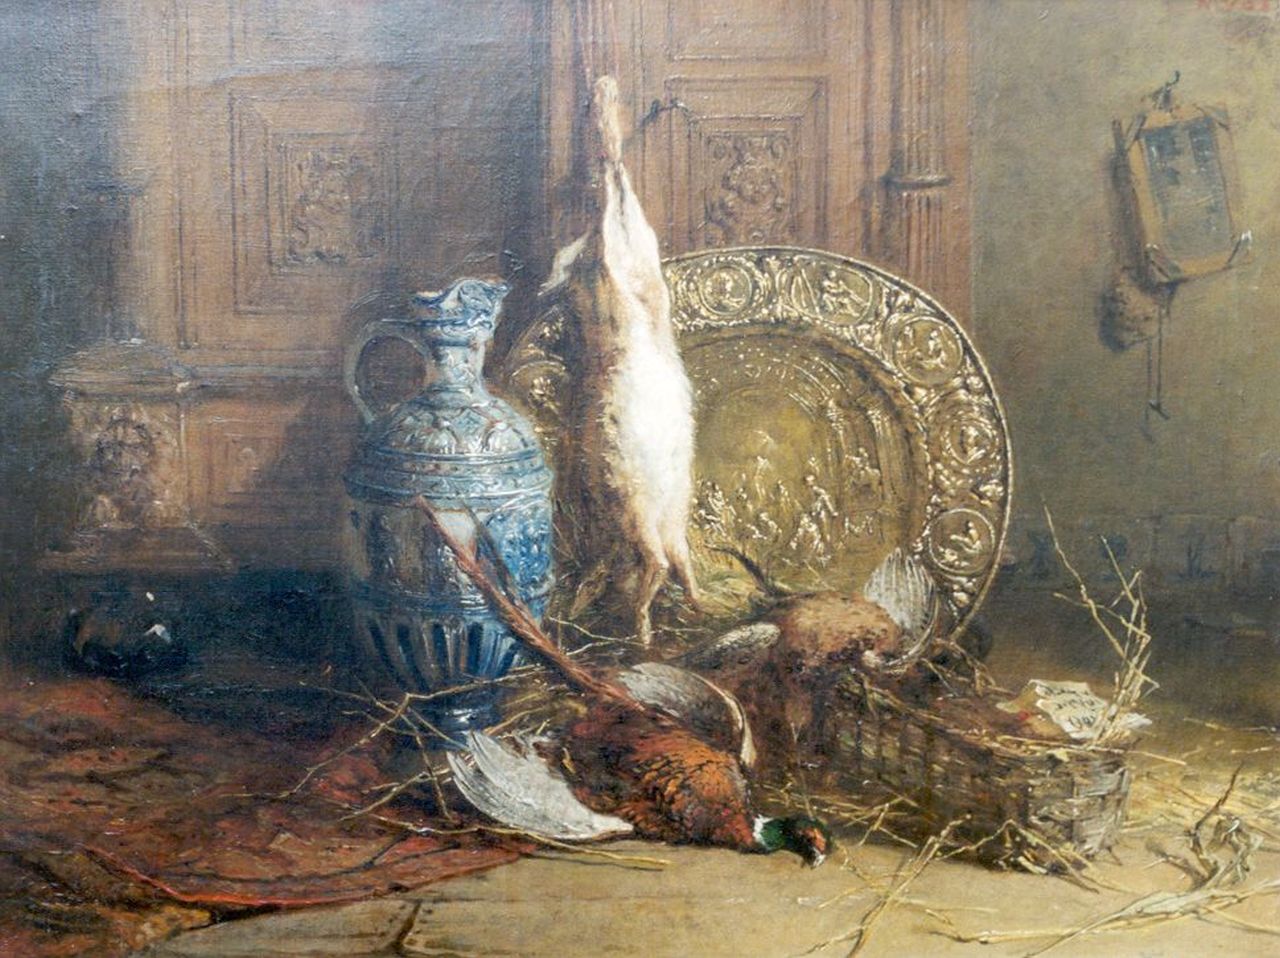 Vos M.  | Maria Vos, A hunting still life, Öl auf Leinwand 46,2 x 61,1 cm, signed u.r.